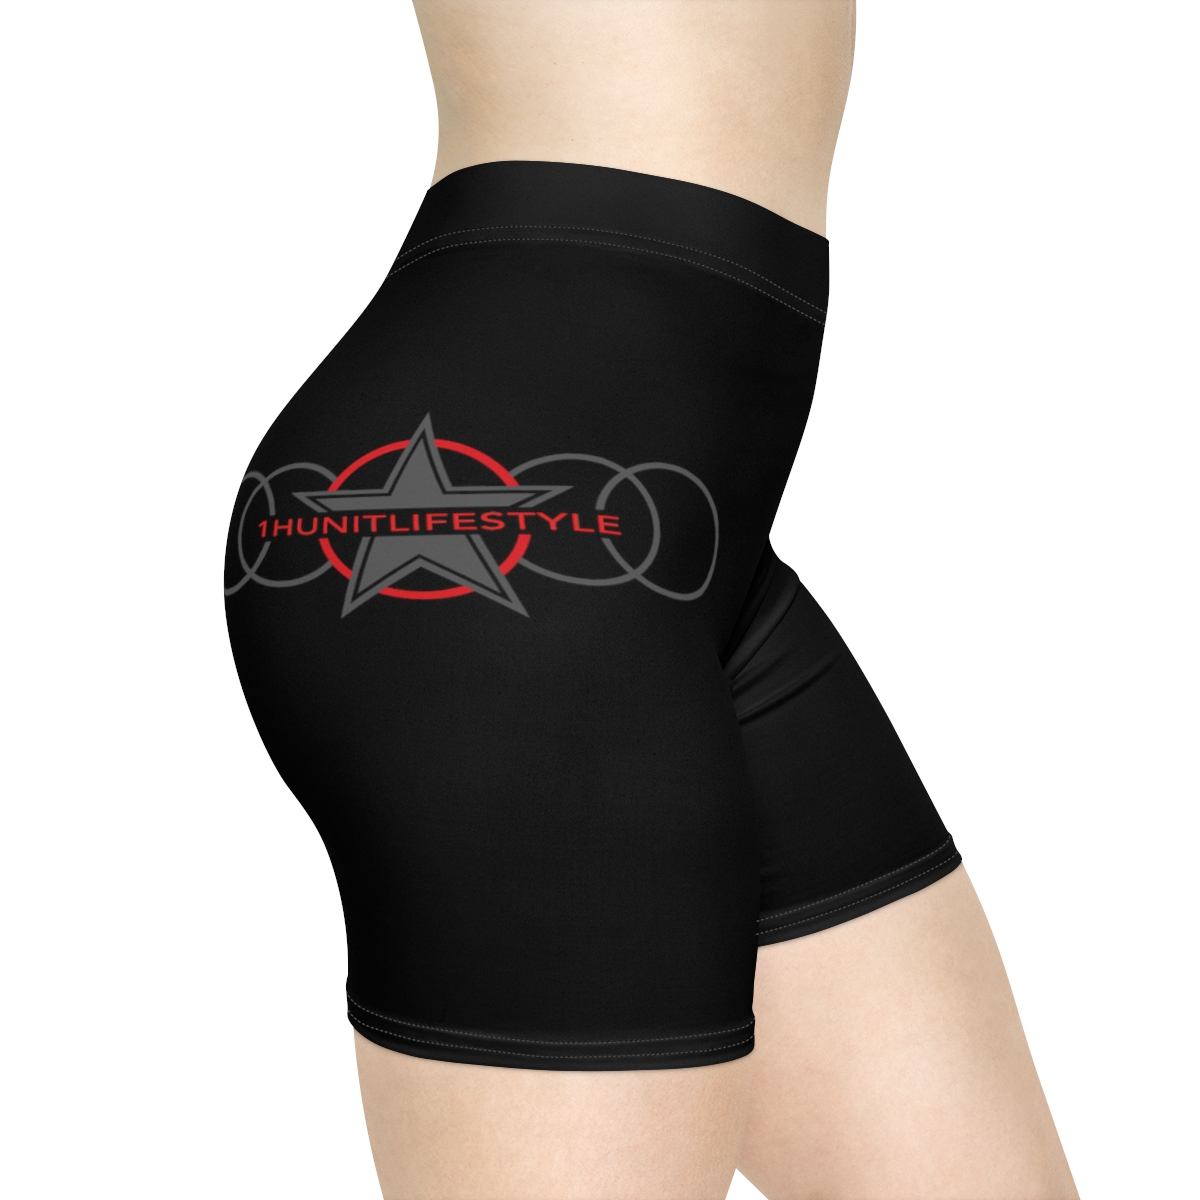 Women's Biker Shorts (Black) product thumbnail image